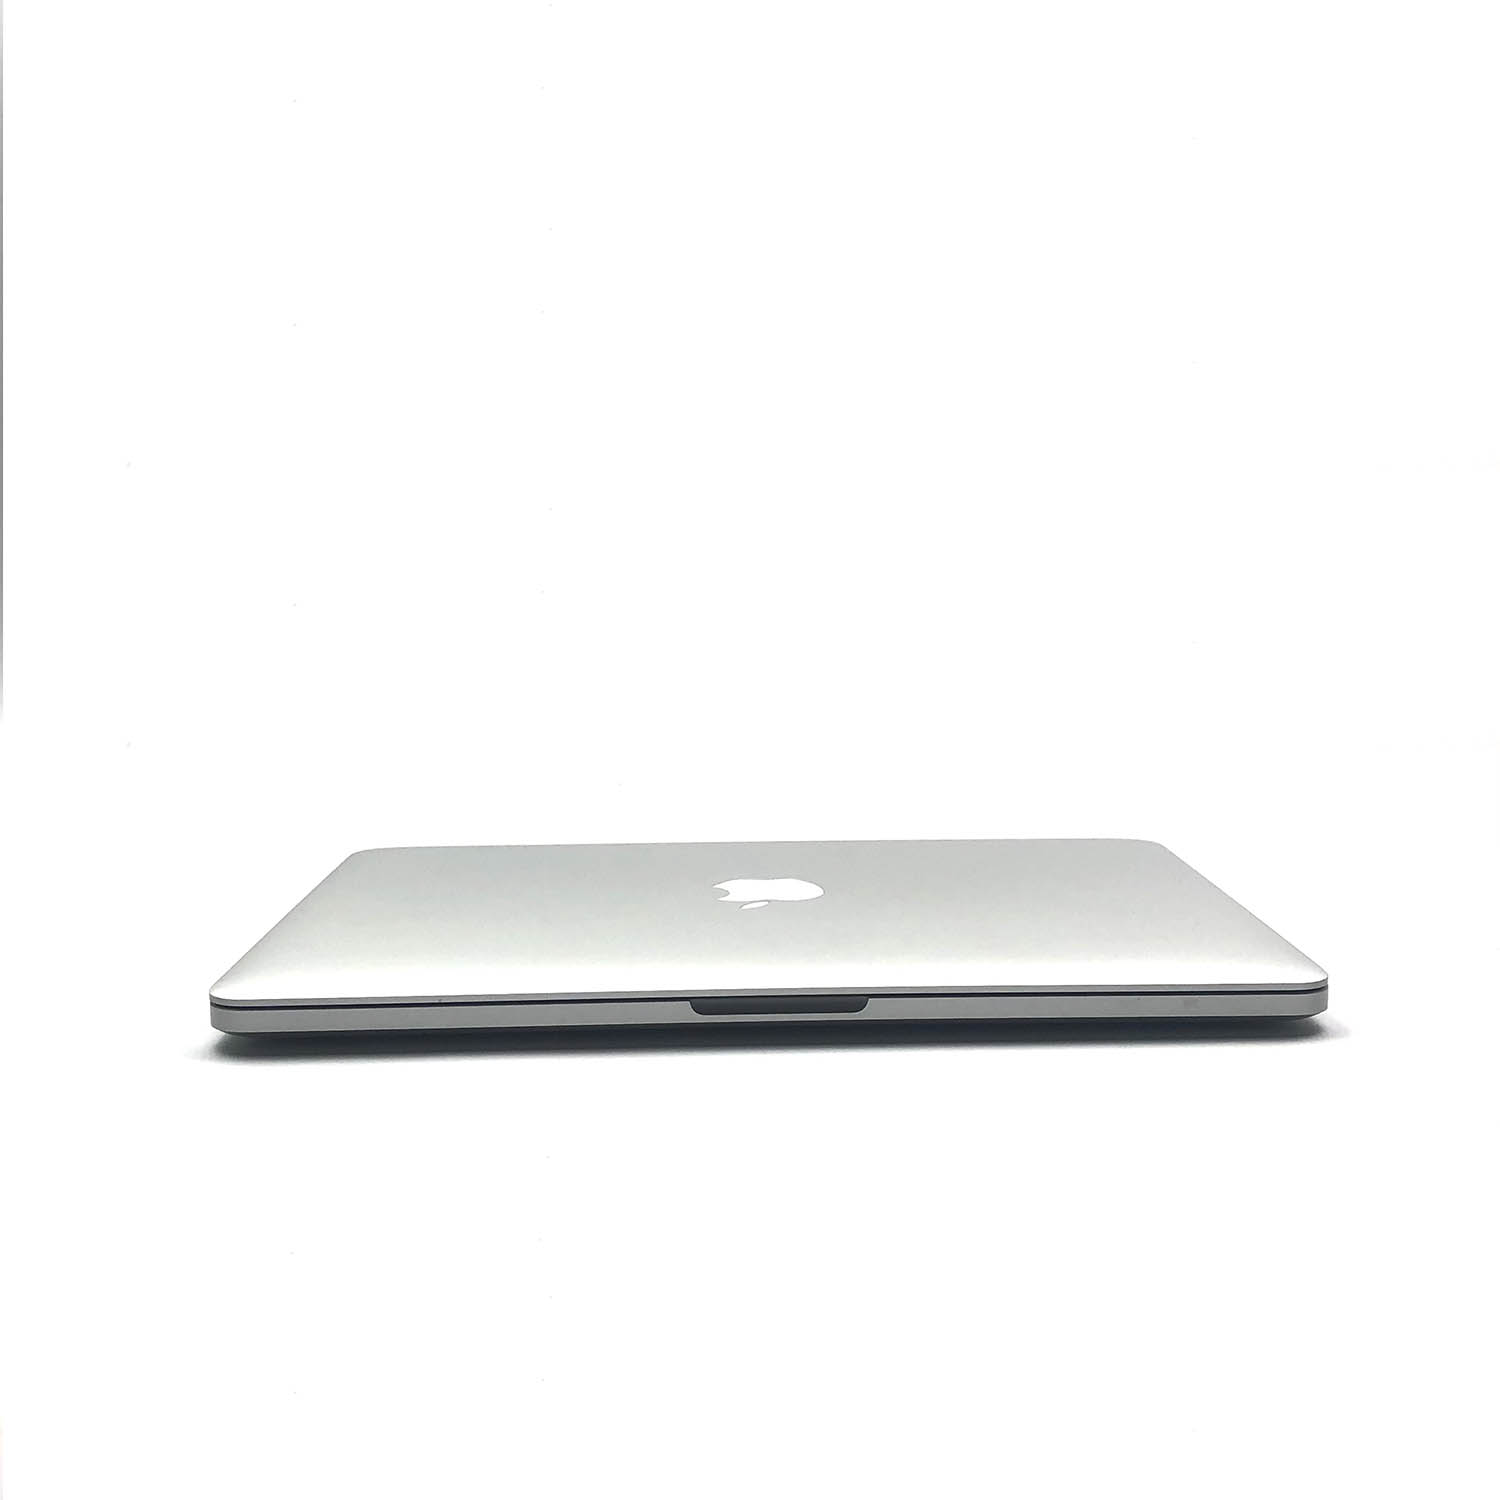 Macbook Pro Retina 13 i7 3.0Ghz 8GB 500GB SSD ME662LL/A Seminovo